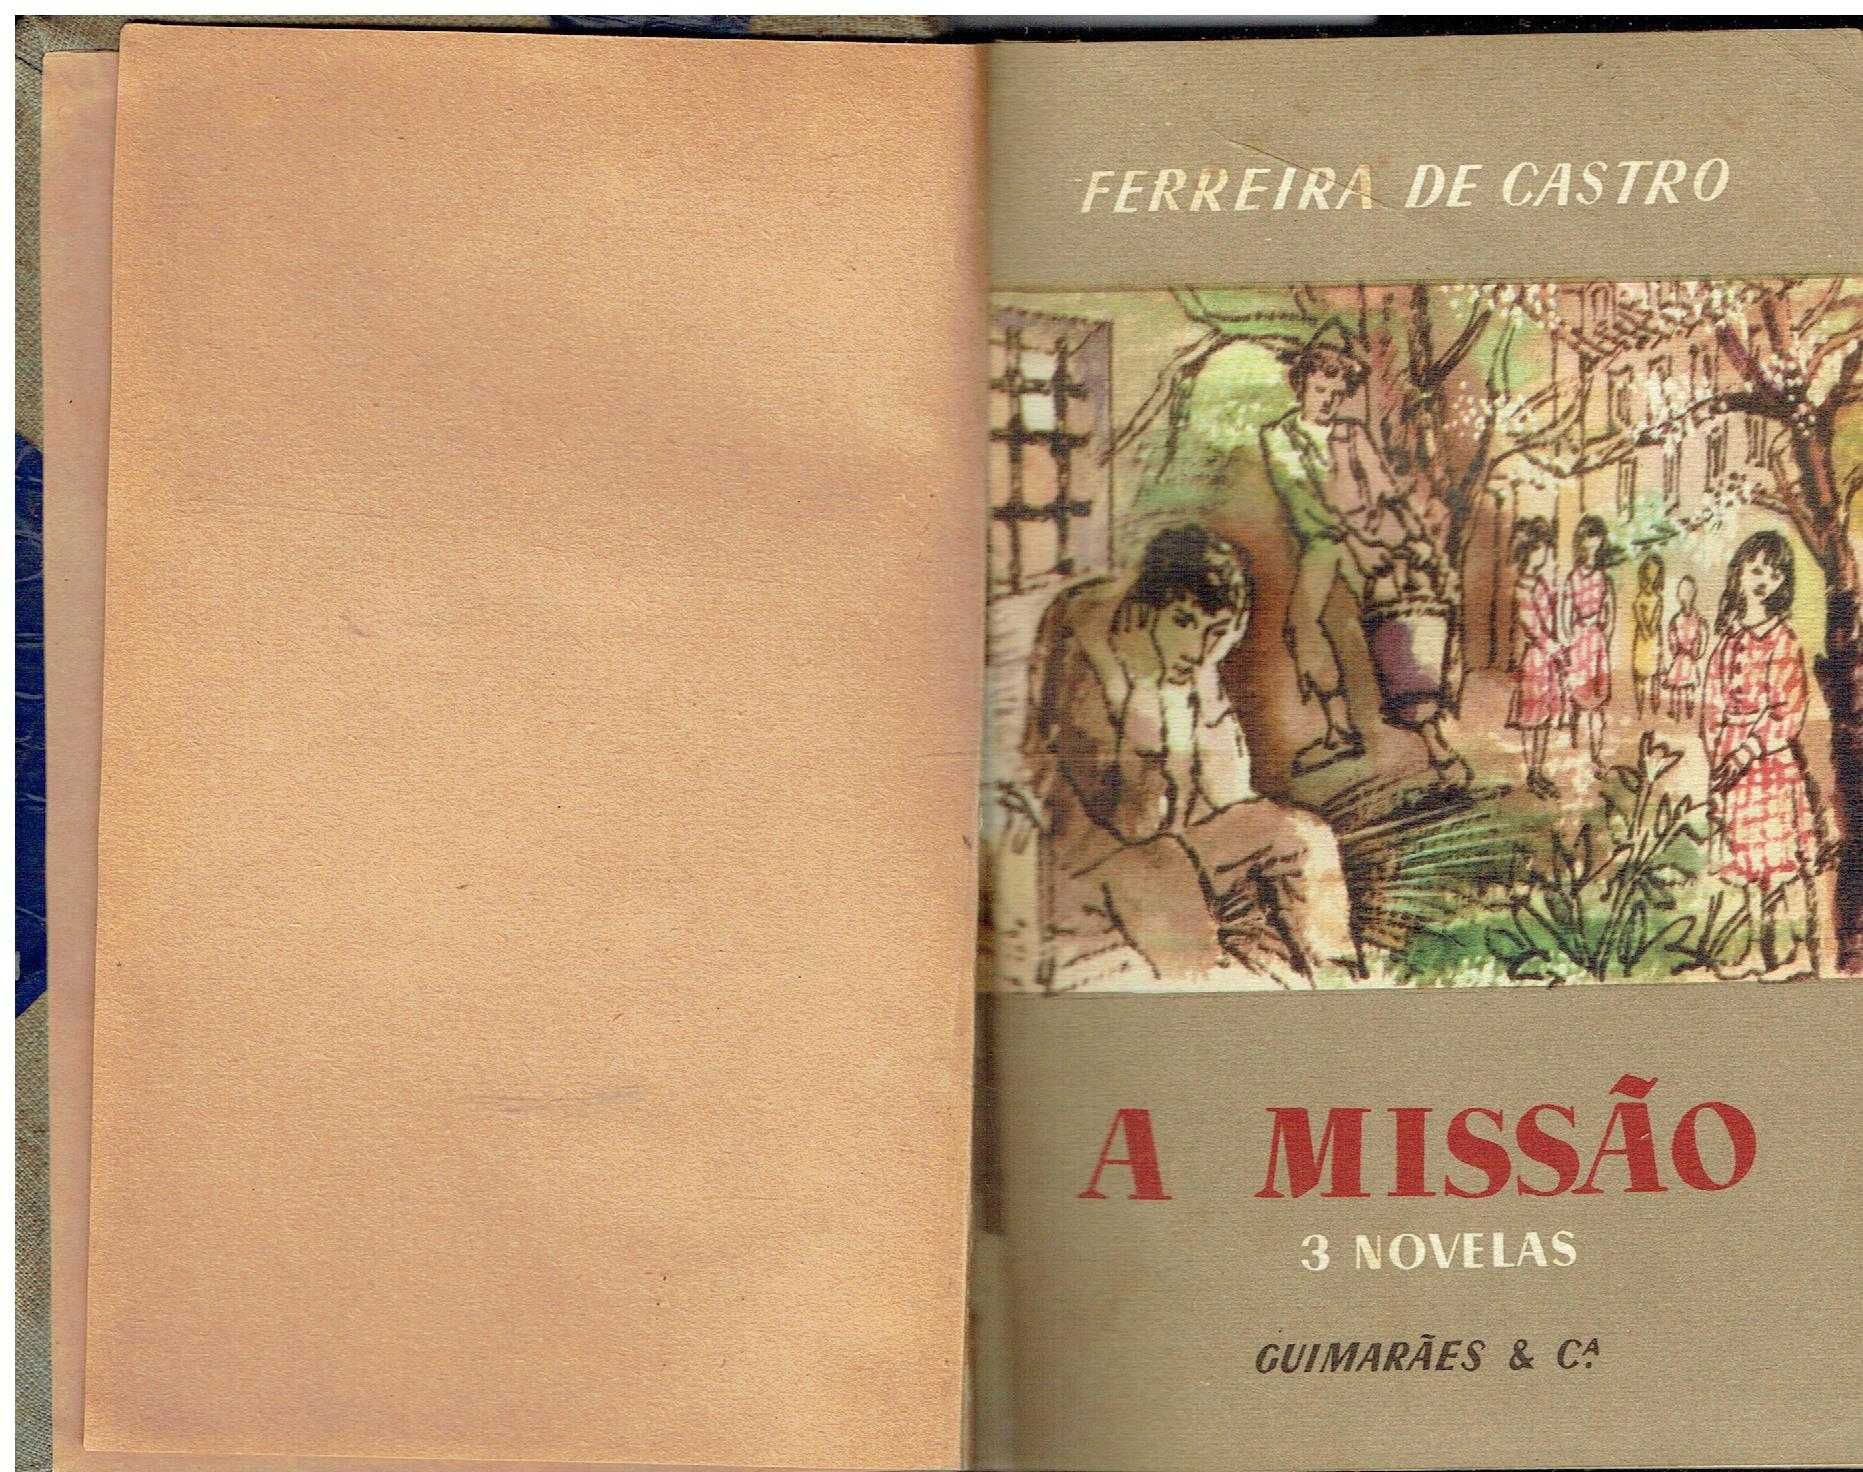 2134
	
A missão : três novelas  
de José Maria Ferreira de Castro.